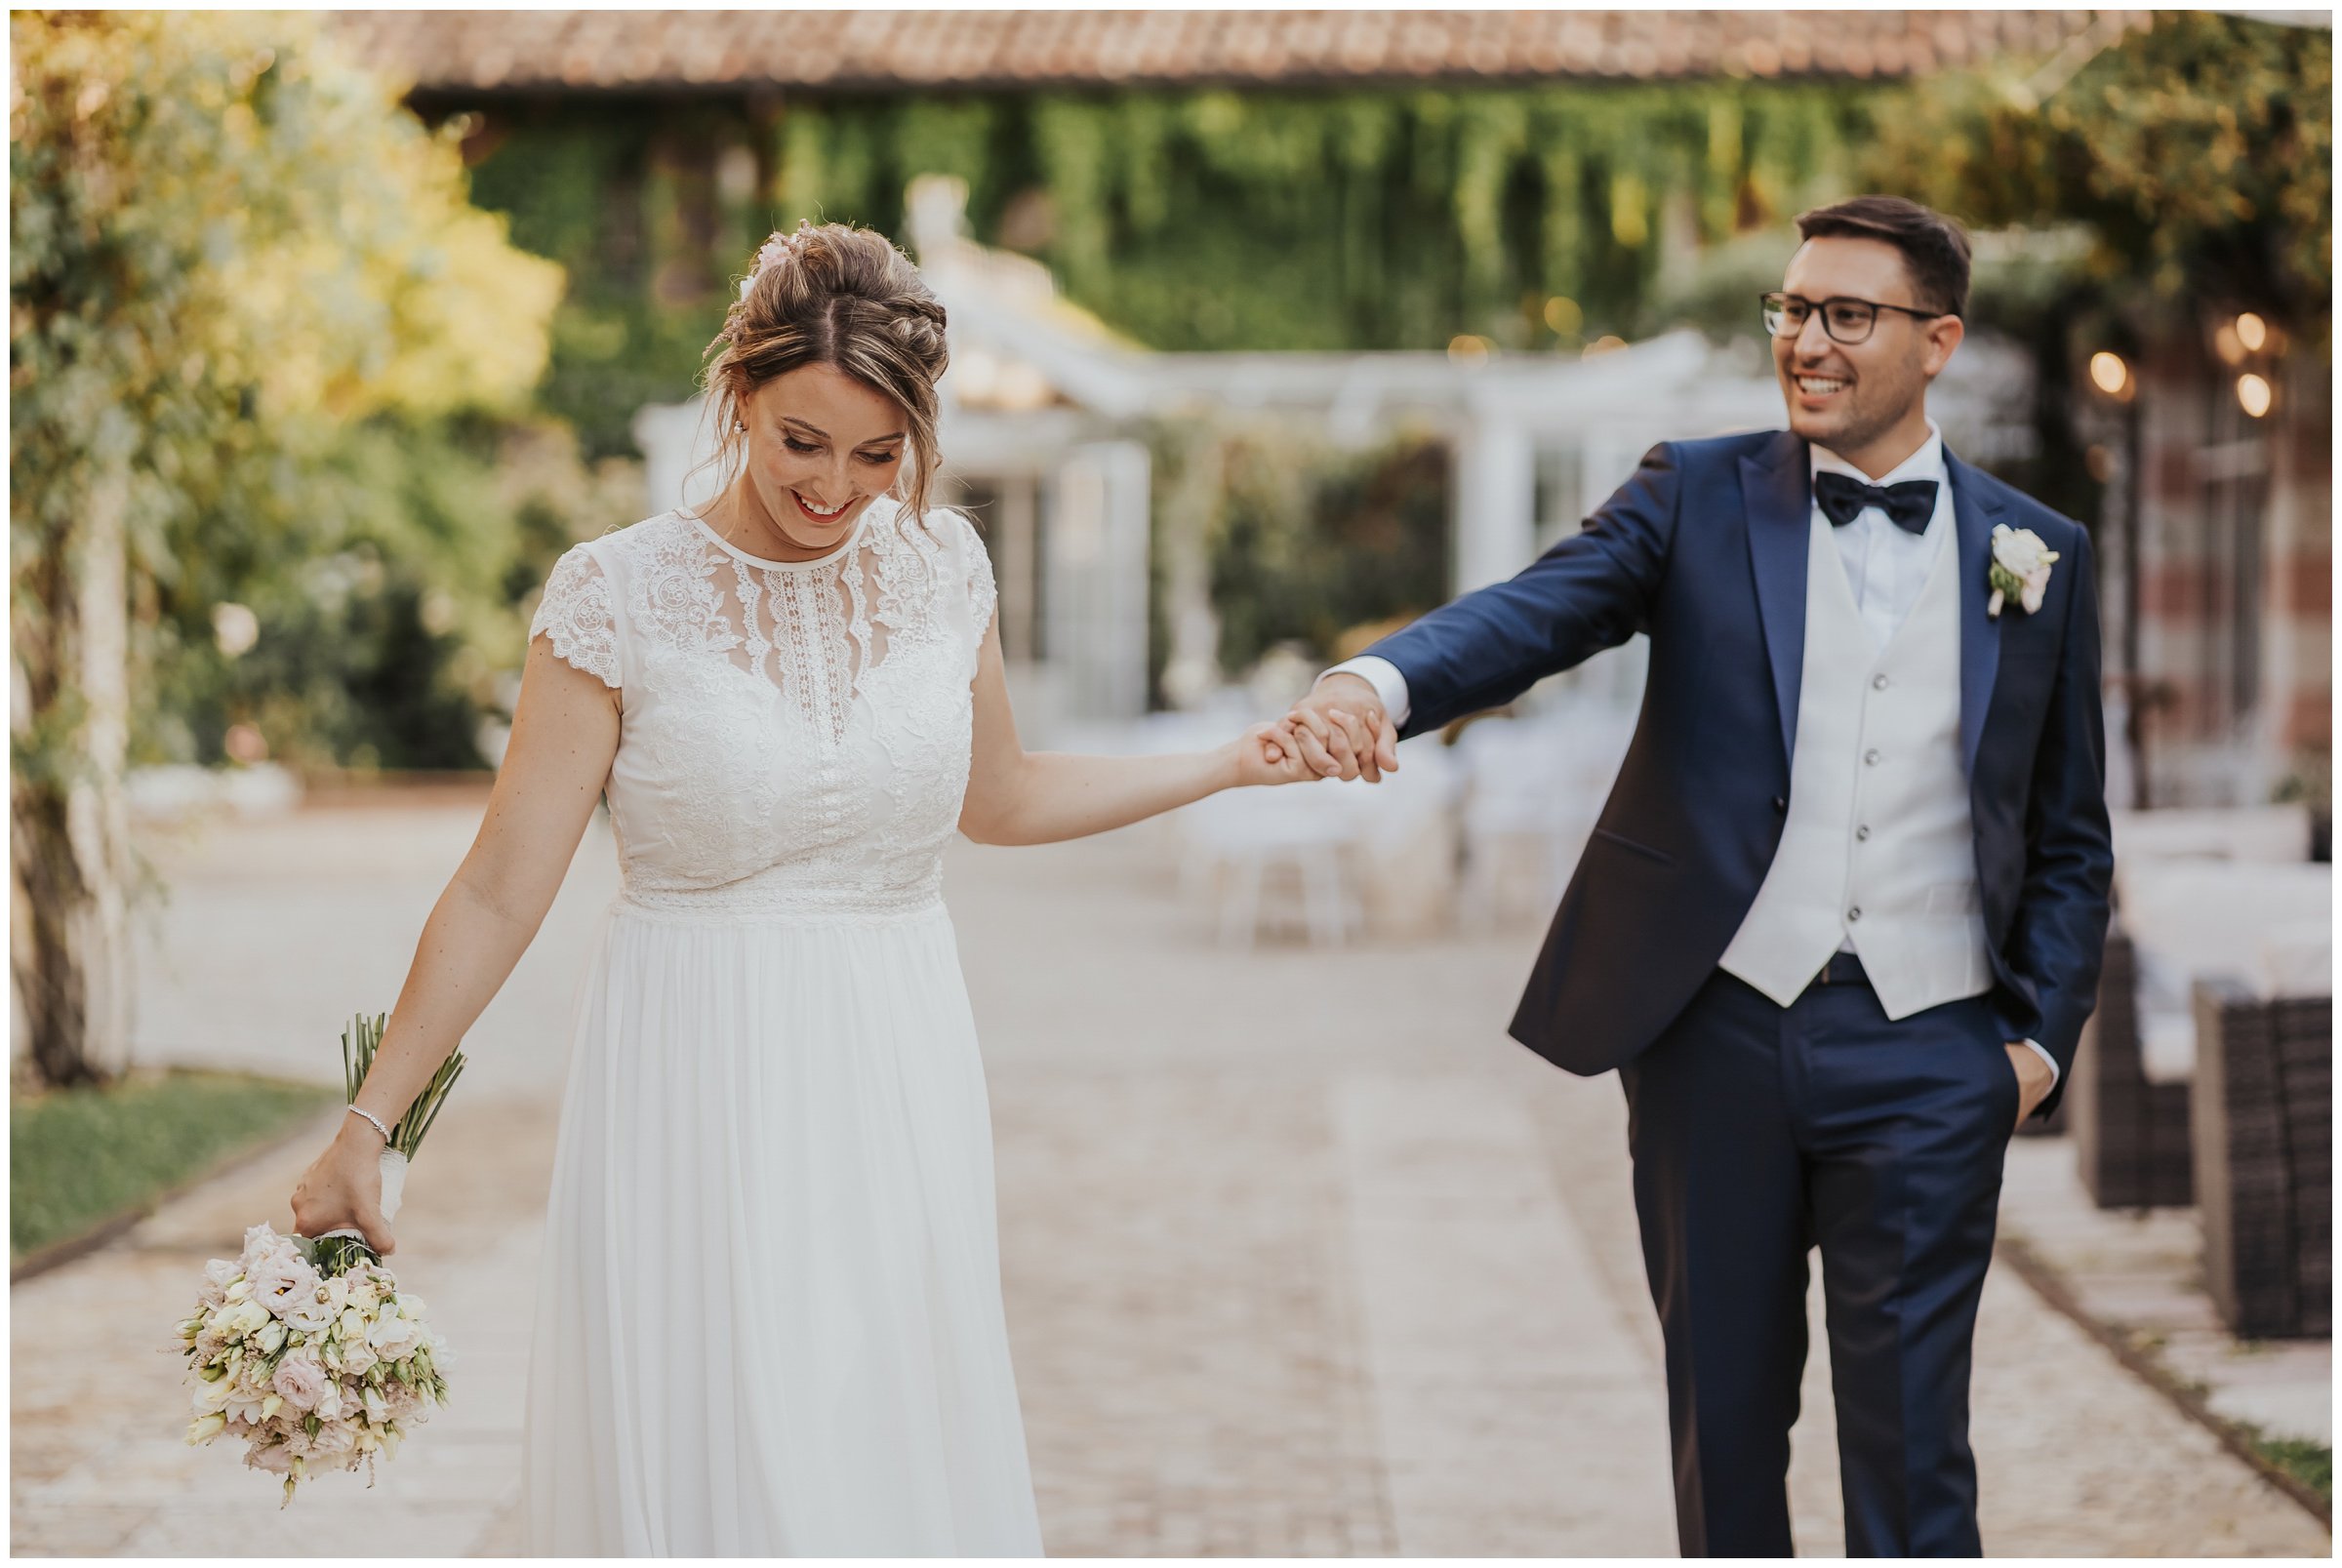 Matrimonio-villa-foscarini-cornaro-fotografo-matrimonio-treviso-fotografo-matrimonio-venezia-45.jpg